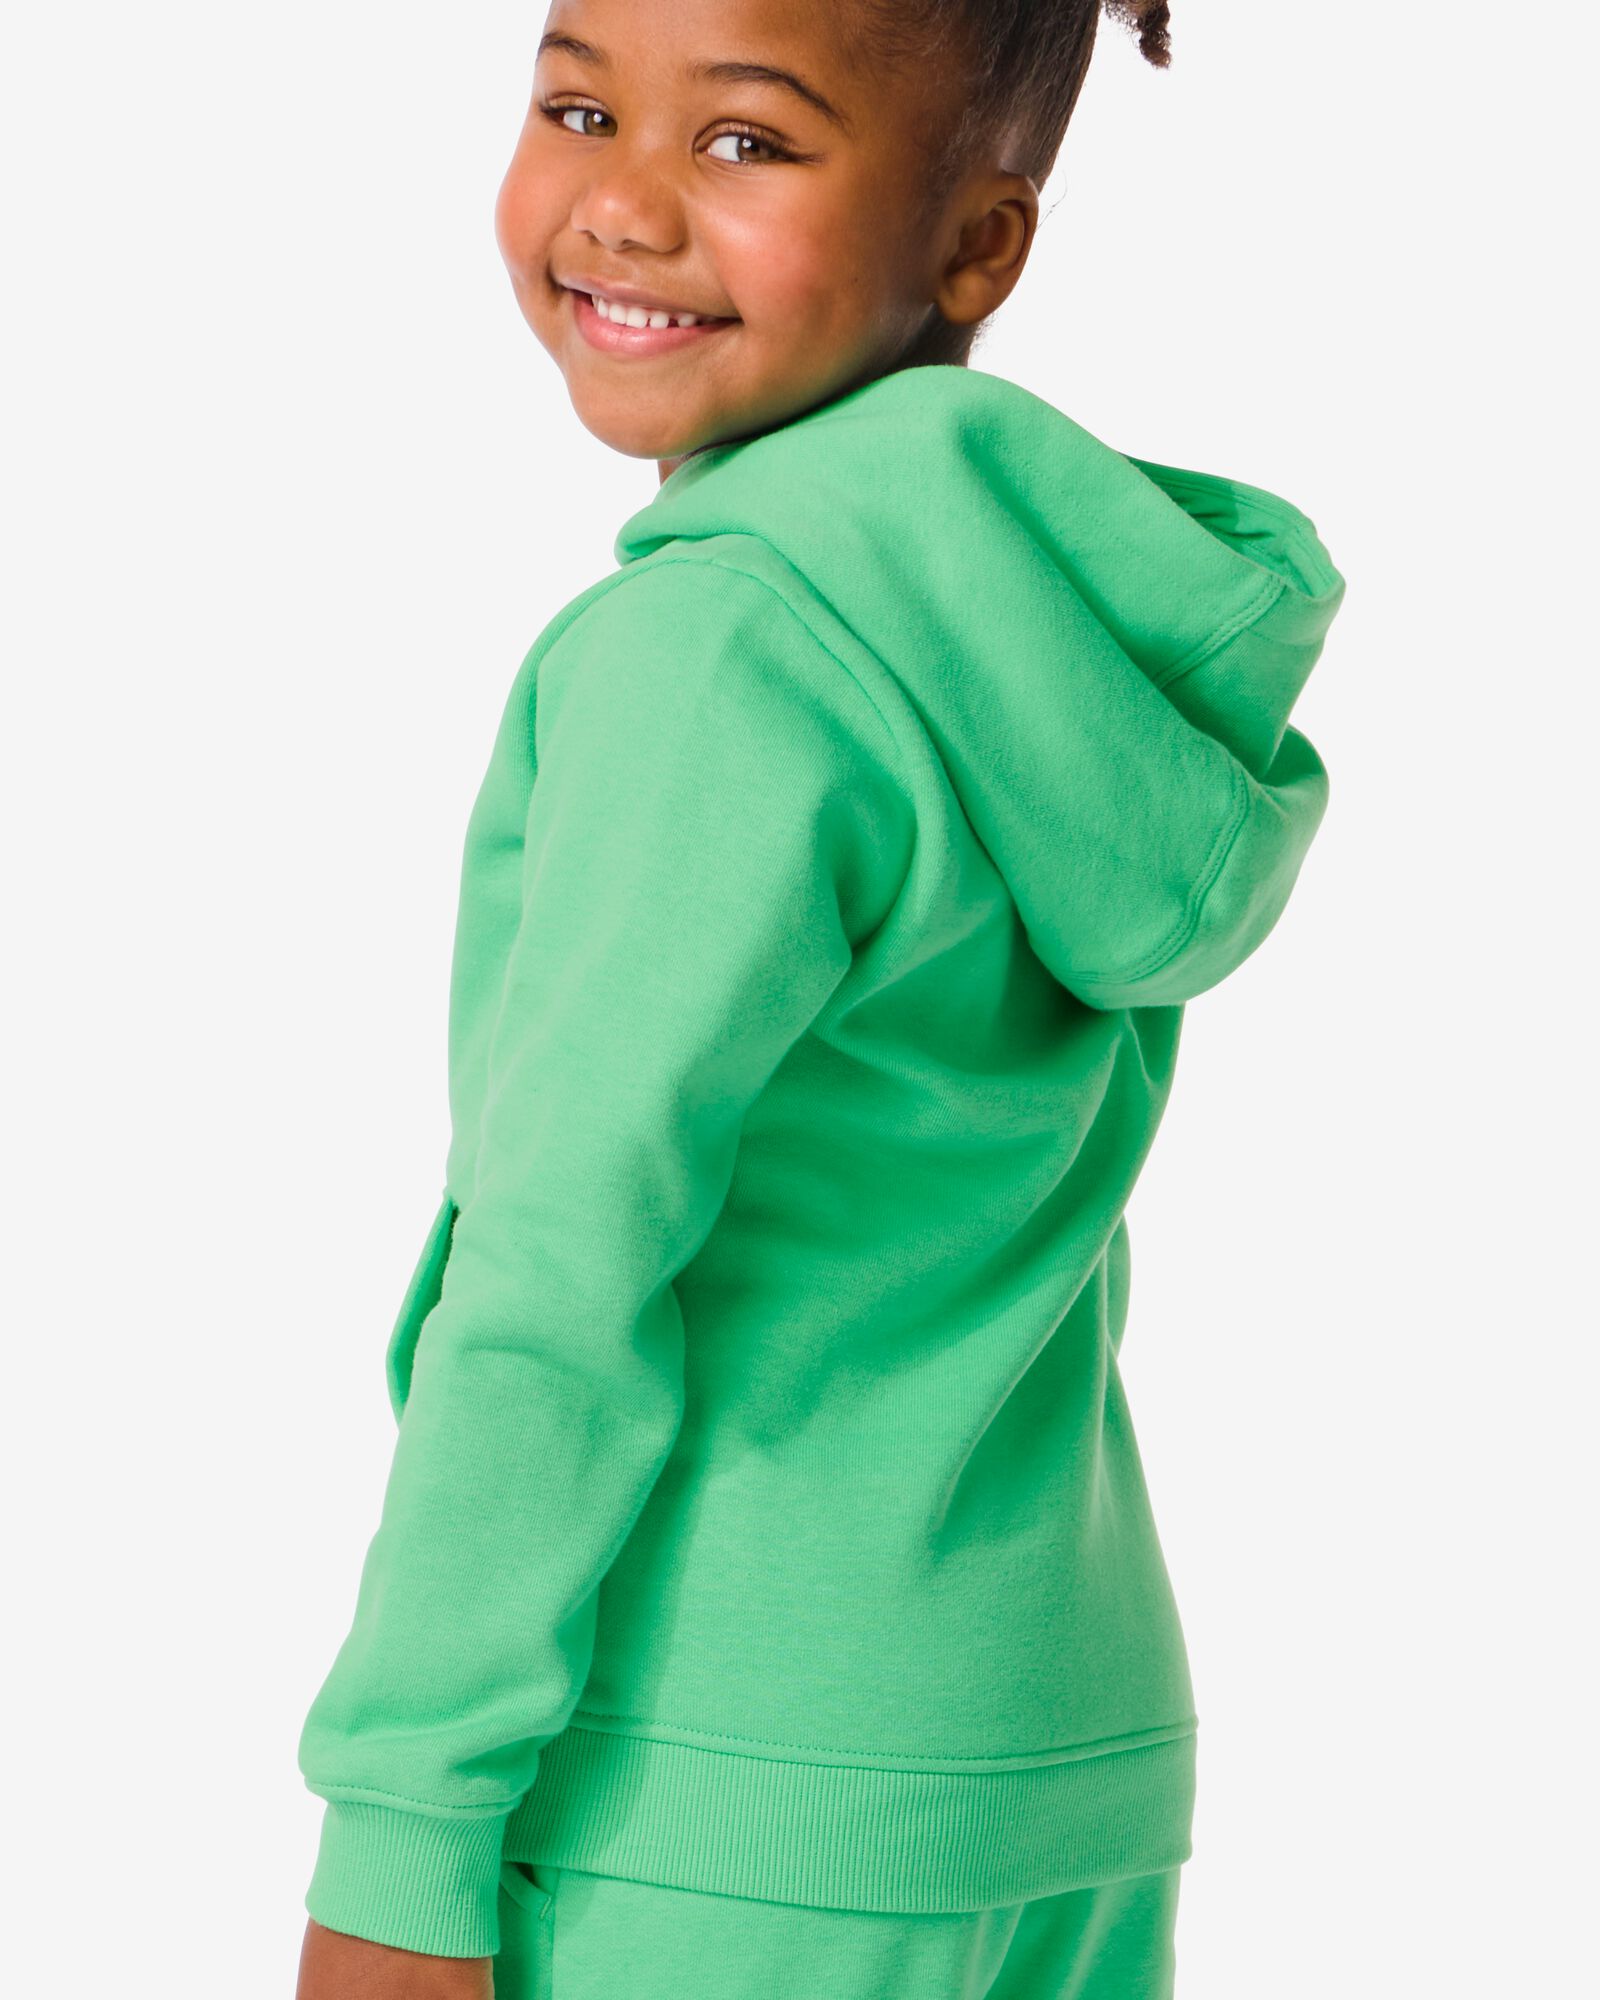 kindersweater met capuchon groen groen - 30777807GREEN - HEMA